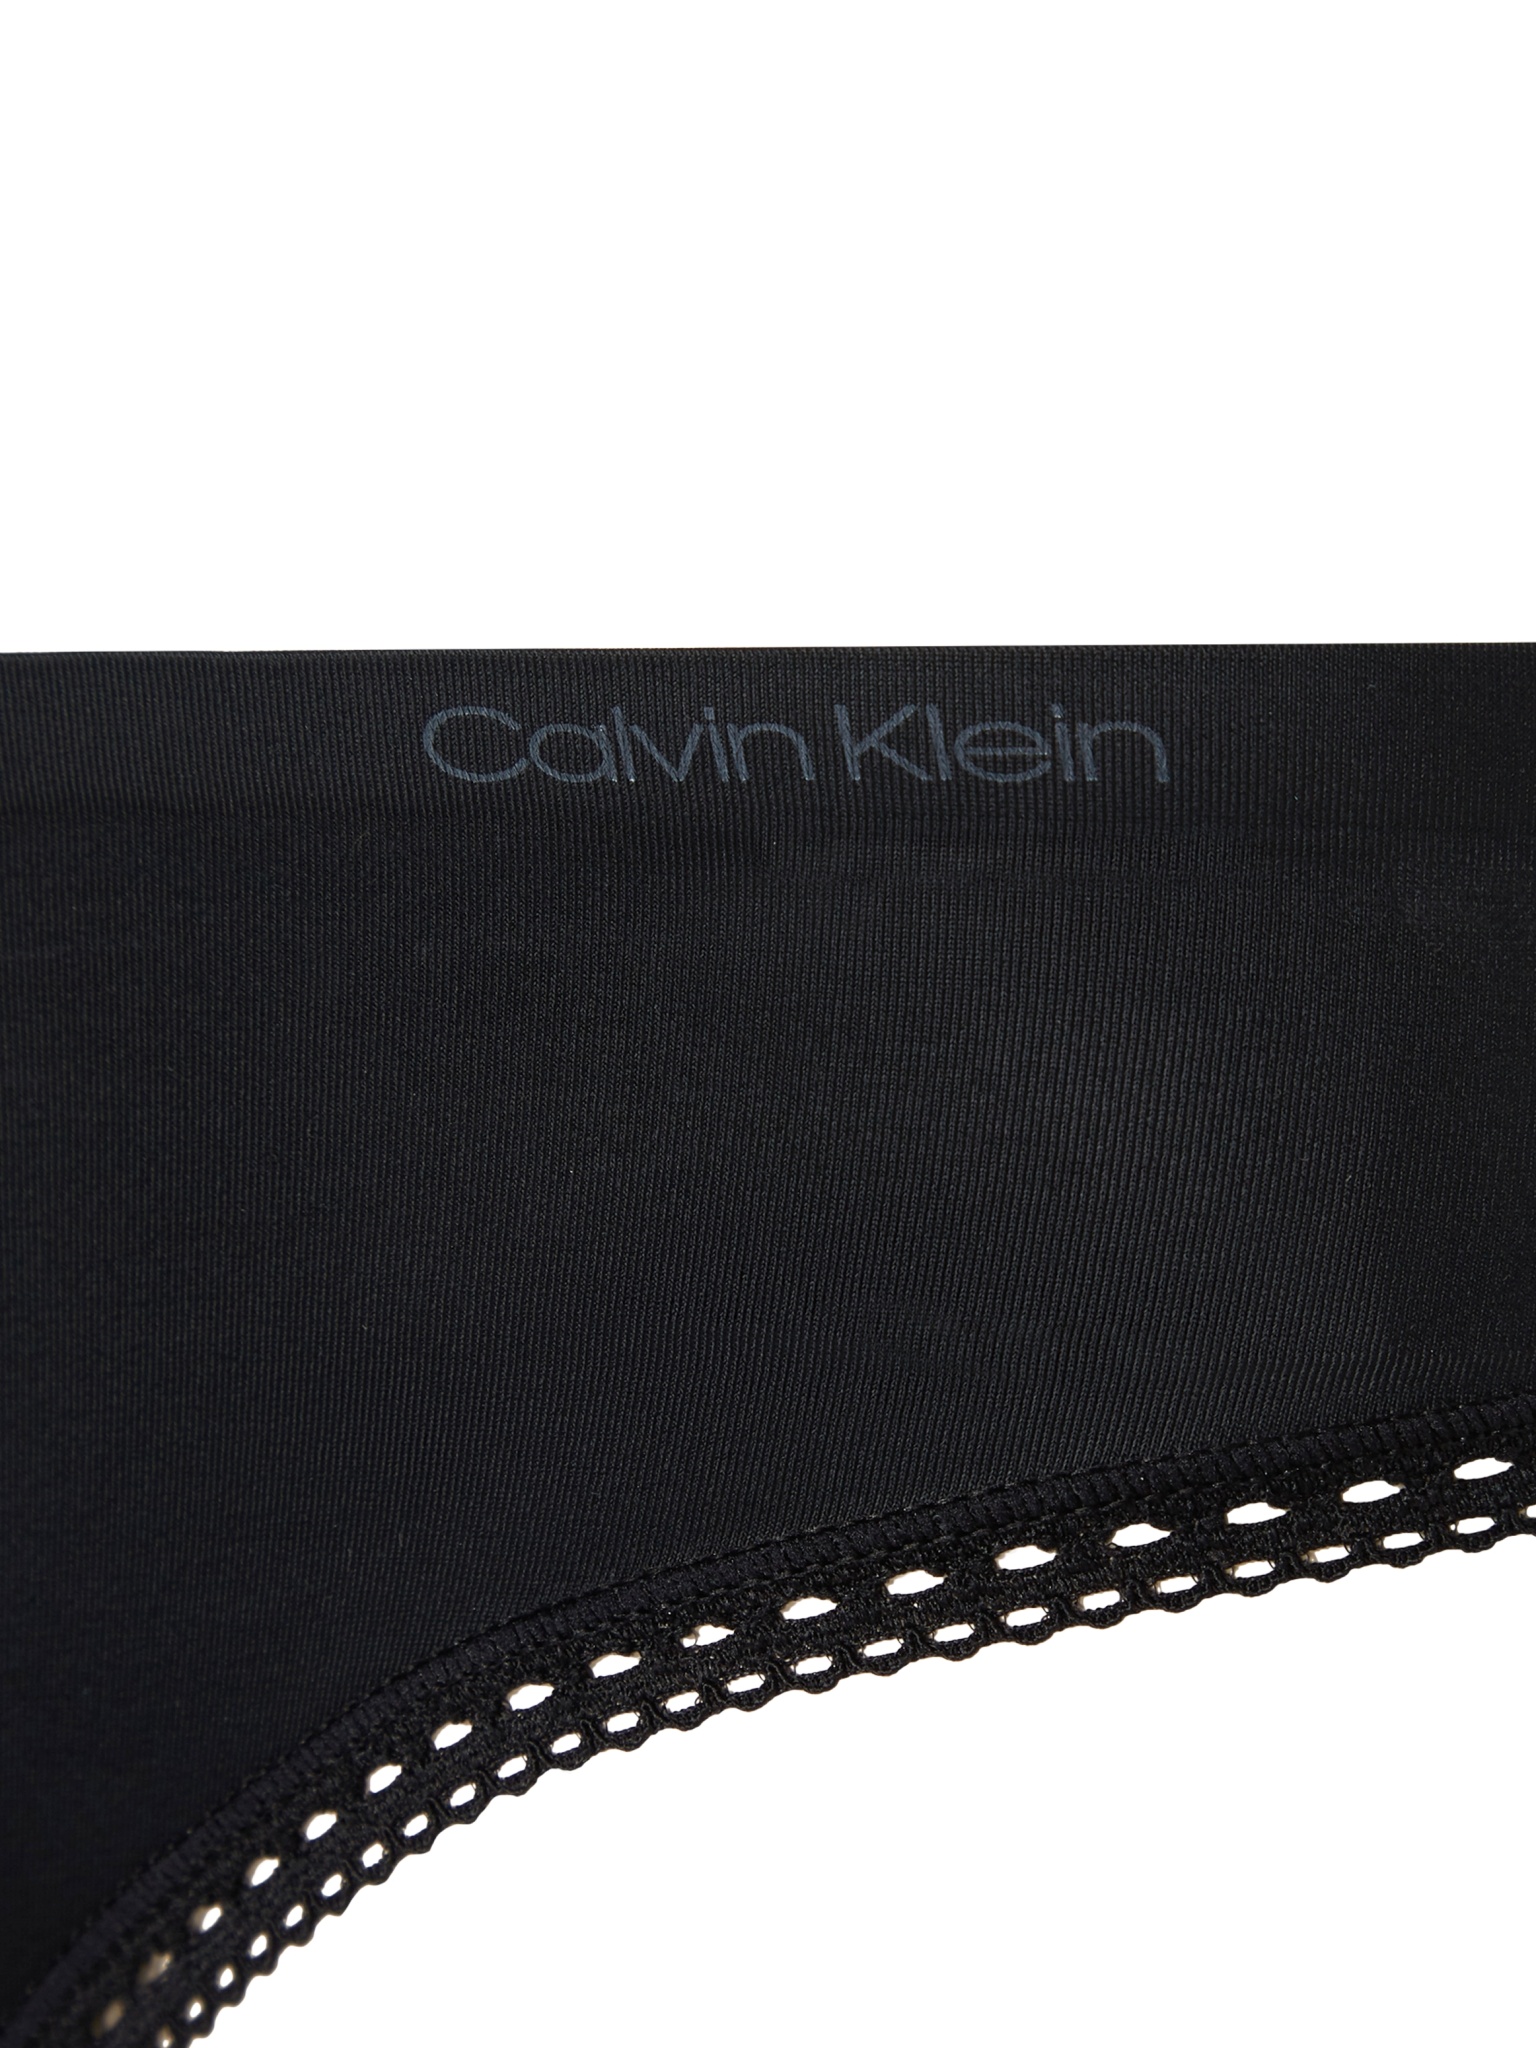 CALVIN KLEIN SLIP - LIQUID TOUCH 10558599